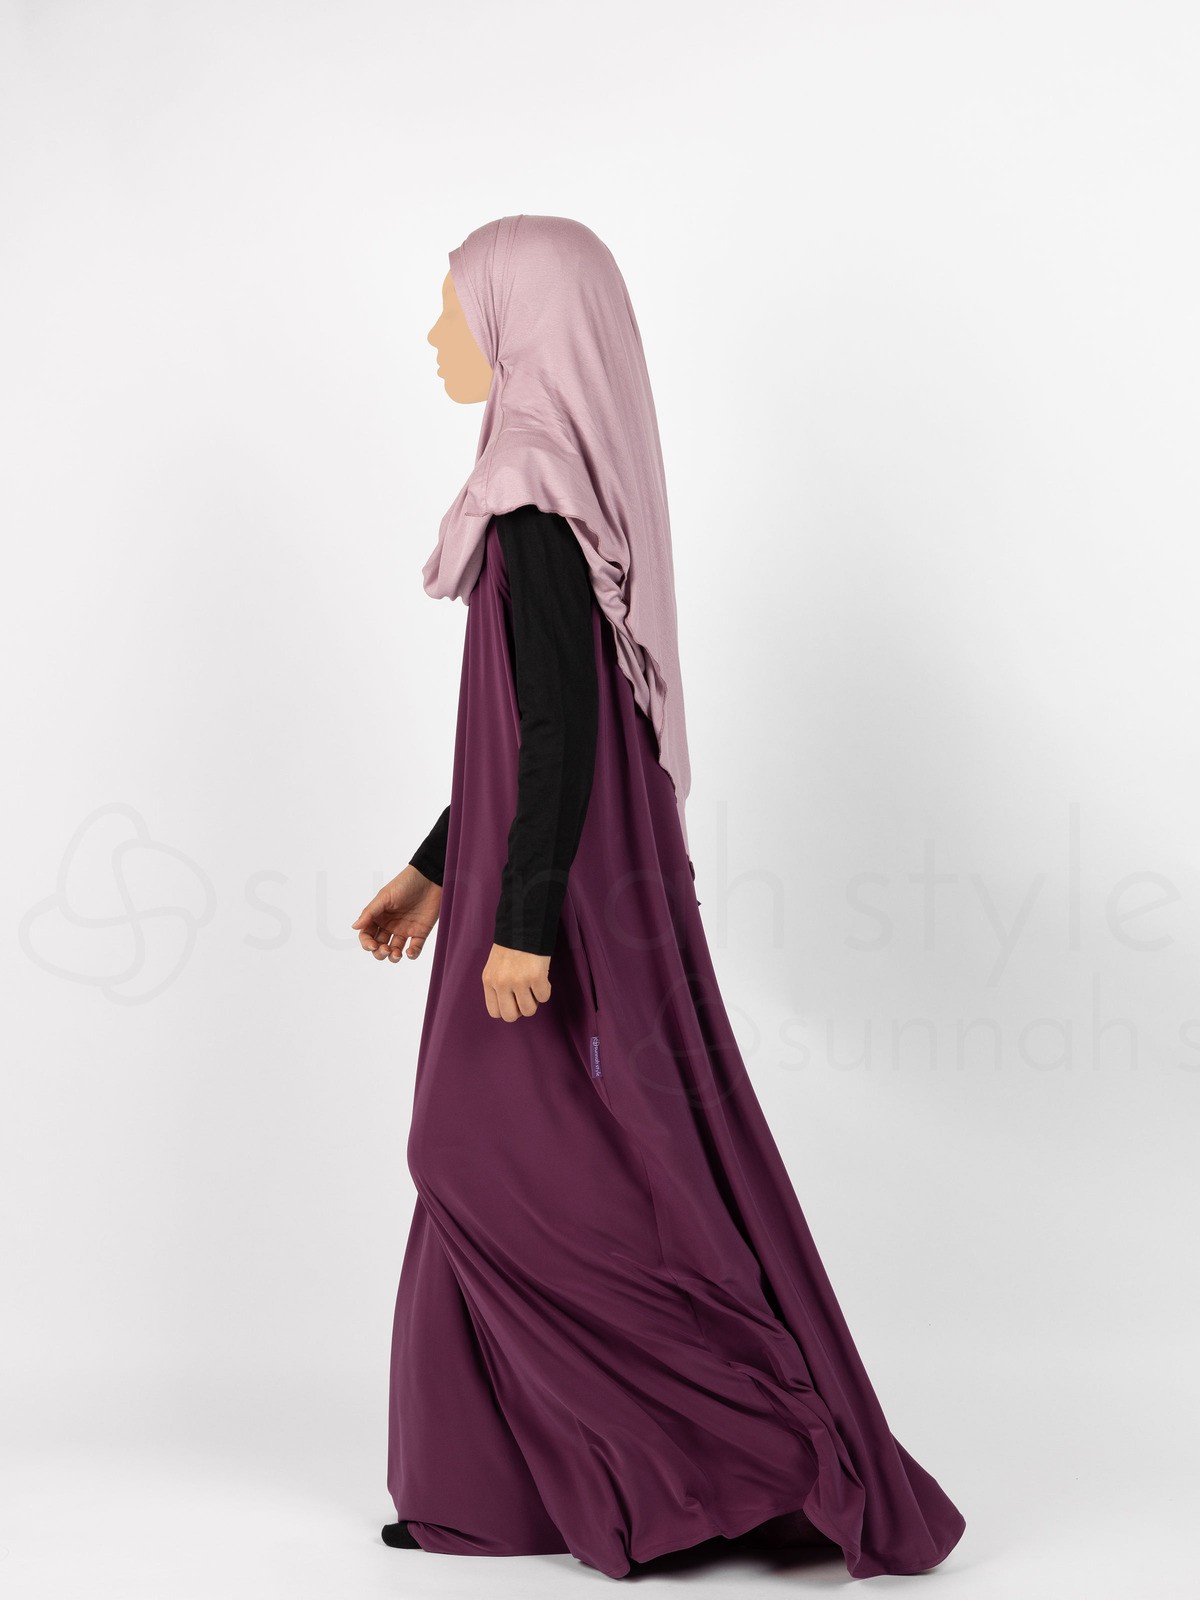 Sunnah Style - Girls Sleeveless Jersey Abaya (Mulberry)